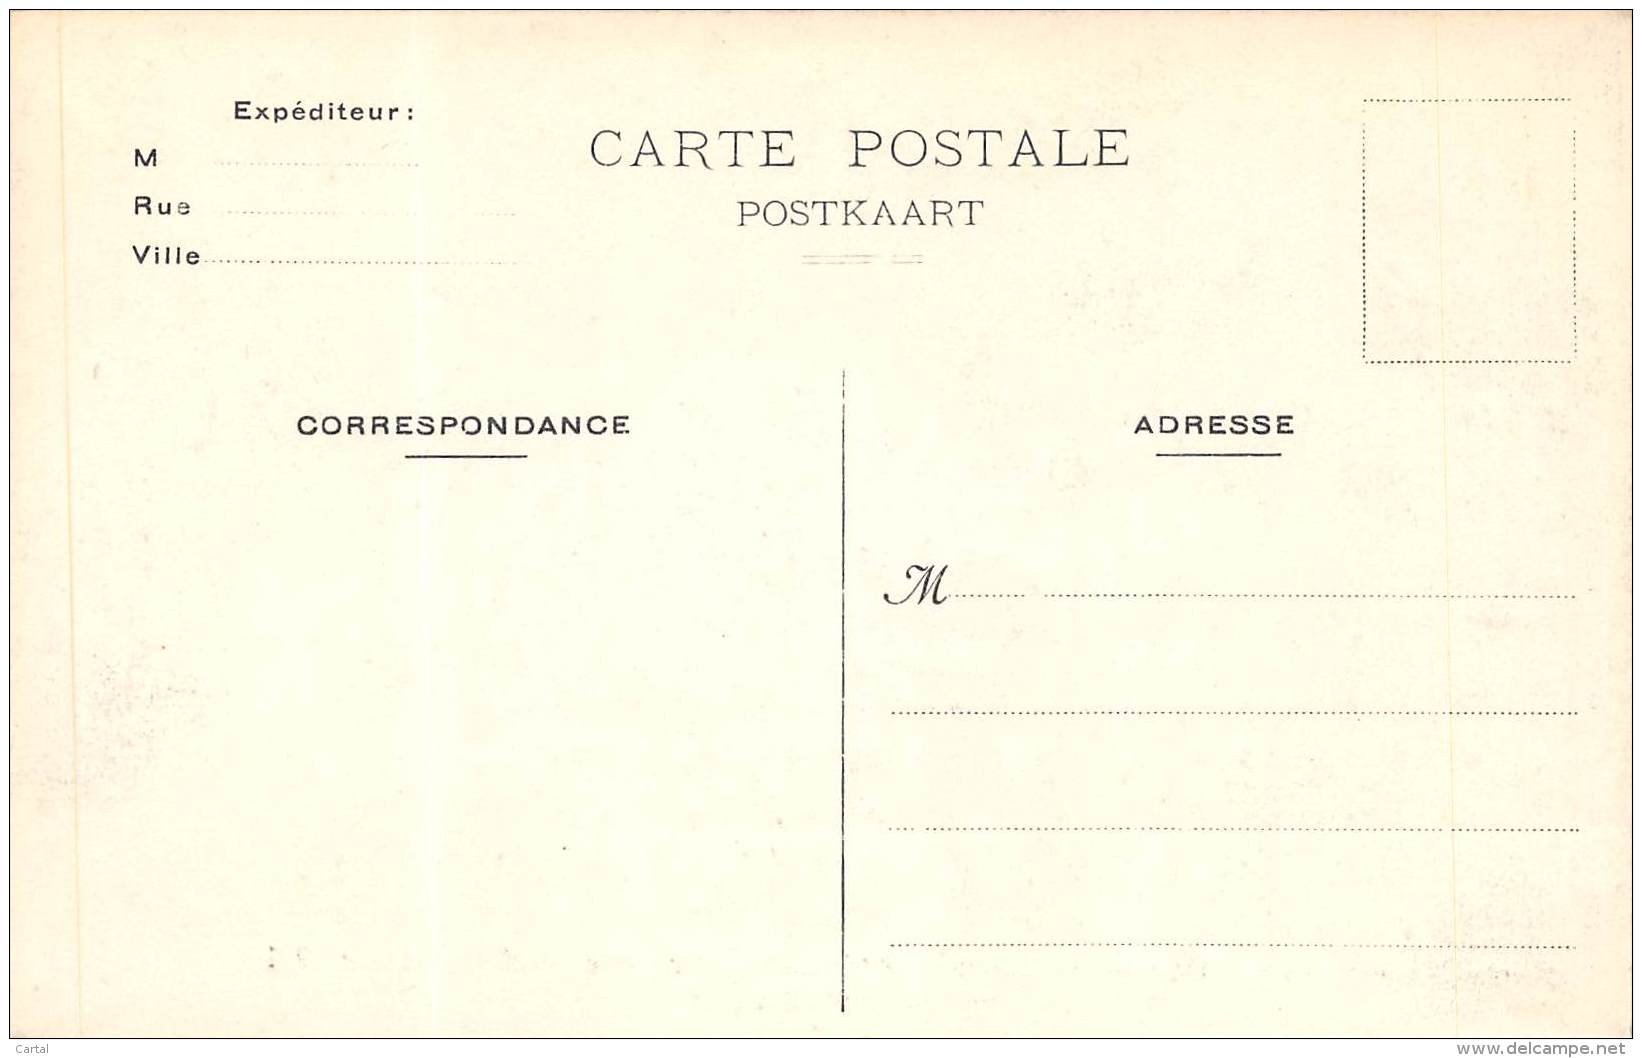 BRUXELLES - Funérailles De S.A.R. Mme La Comtesse De Flandre, 30 Nov 1912 - Le Corps Diplomatique - Fêtes, événements